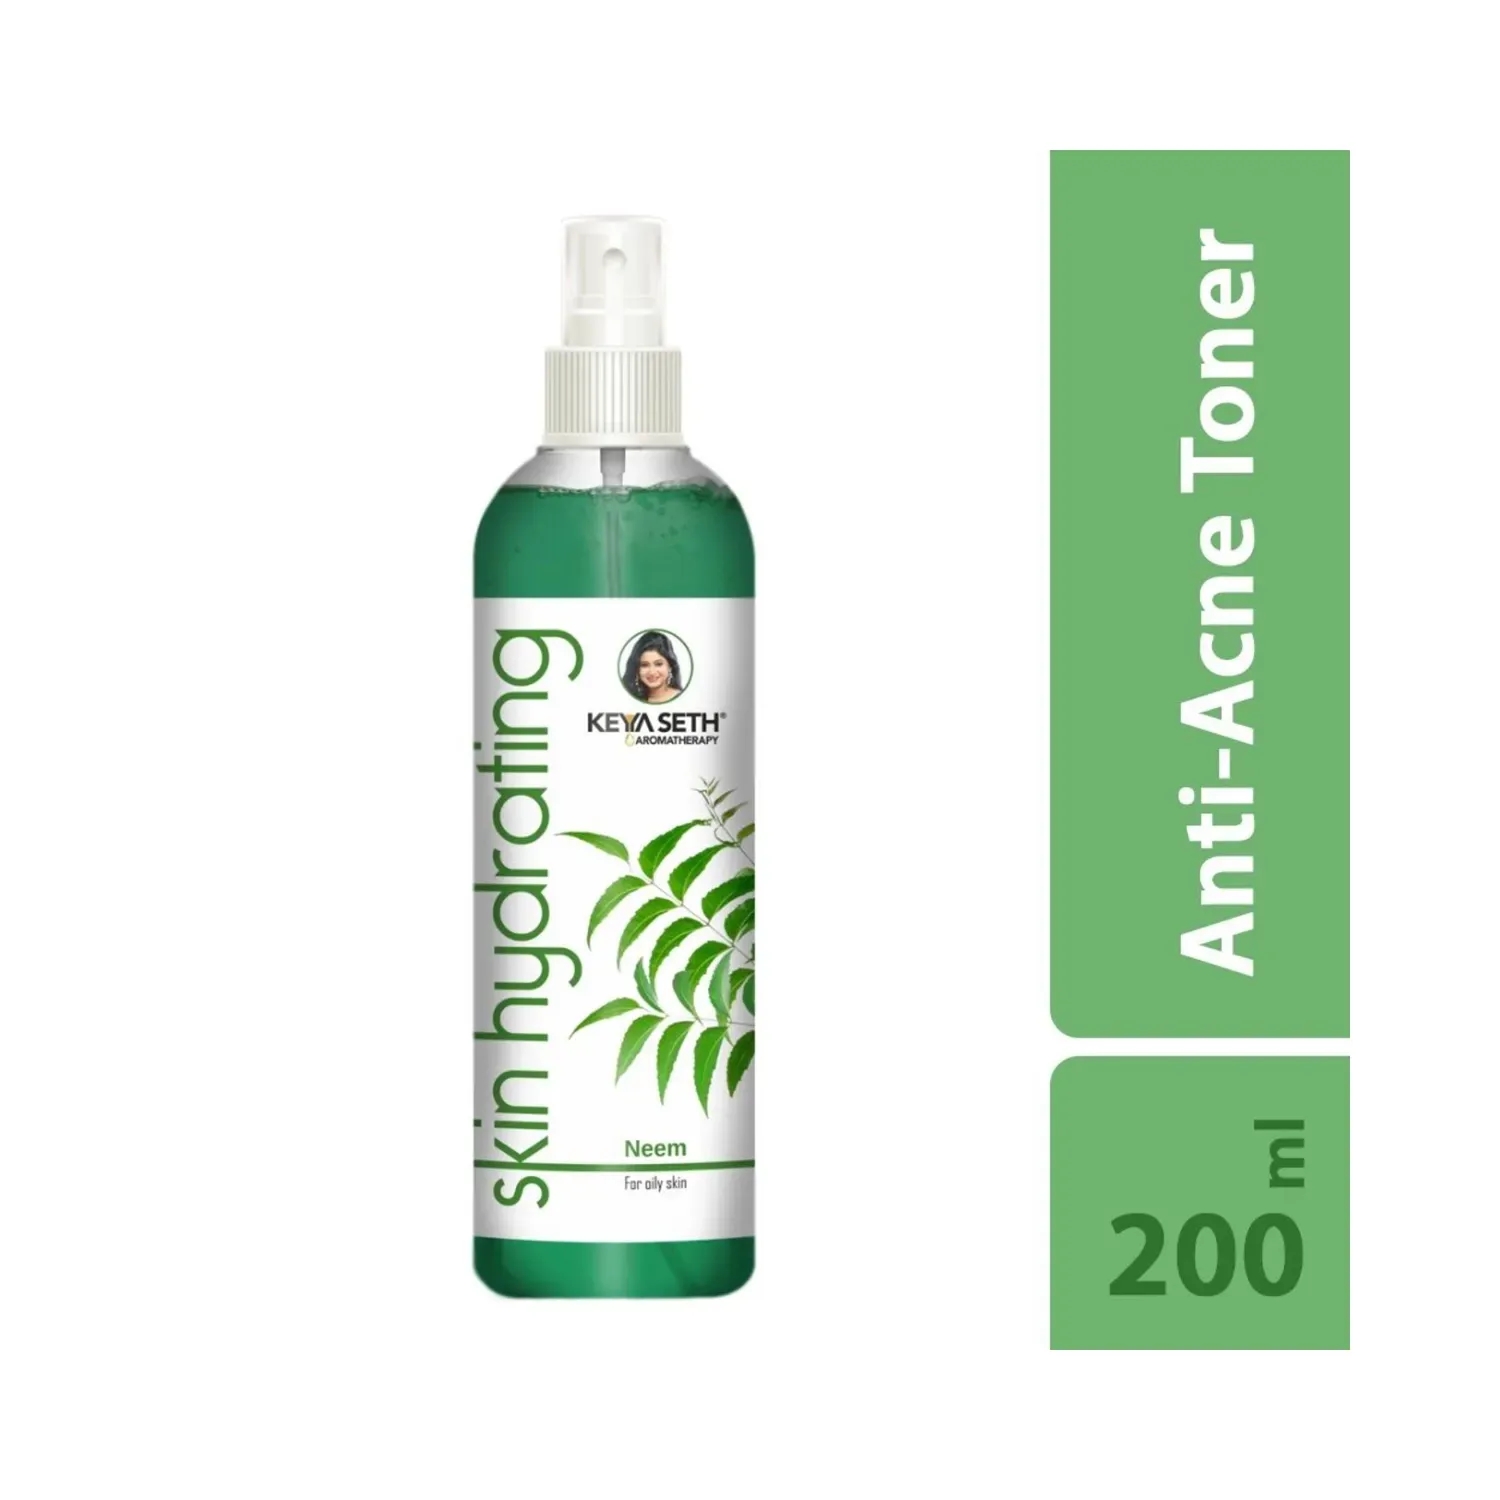 Keya Seth Aromatherapy Skin Hydrating Neem Toner (200ml)